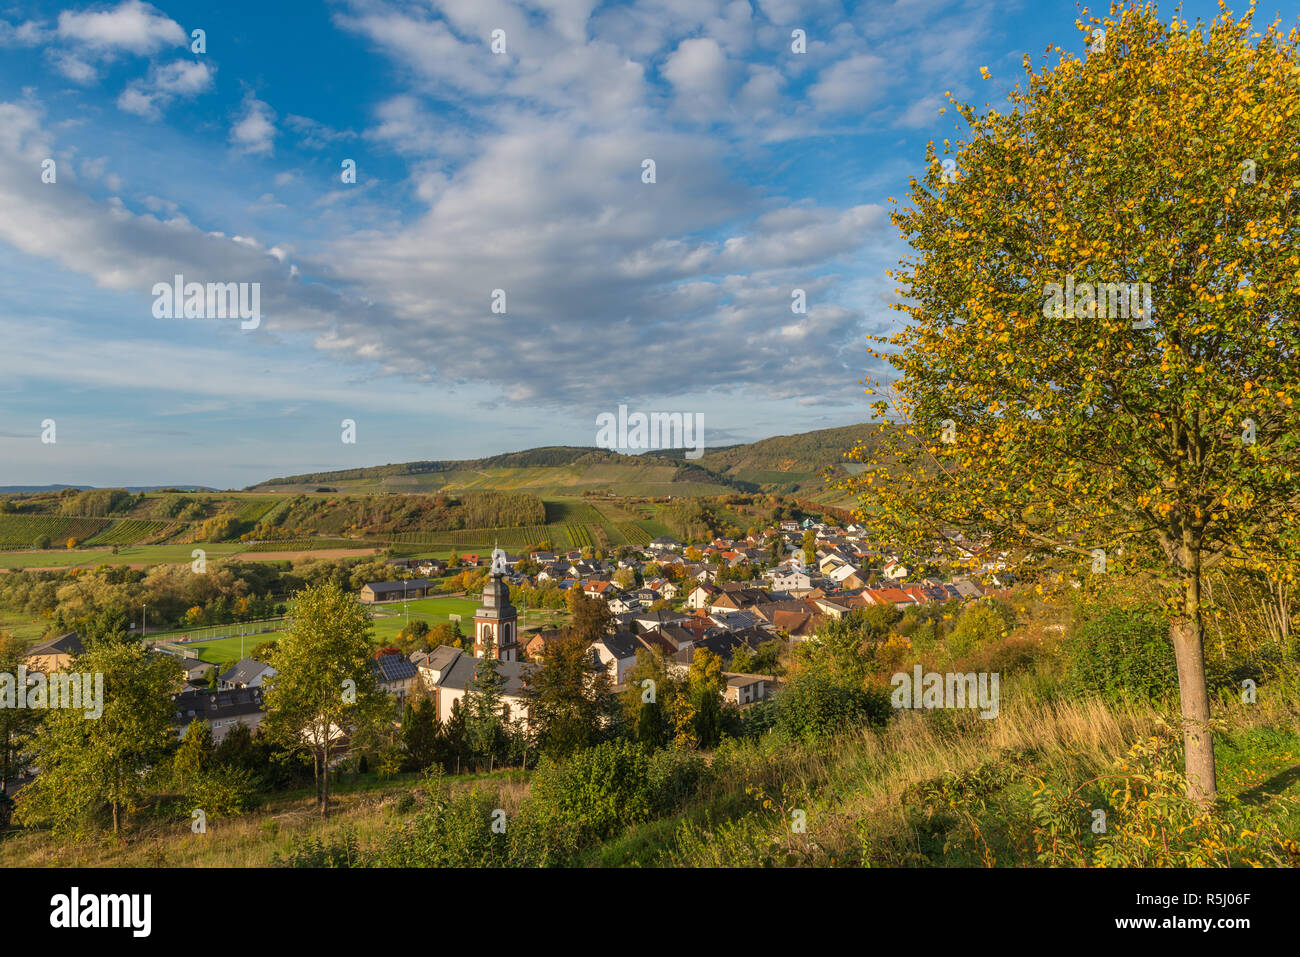 La aldea de Irsch, Saarburg, en medio de los viñedos y el paisaje montañoso de Rhineland-Palantine, Alemania, Europa Foto de stock